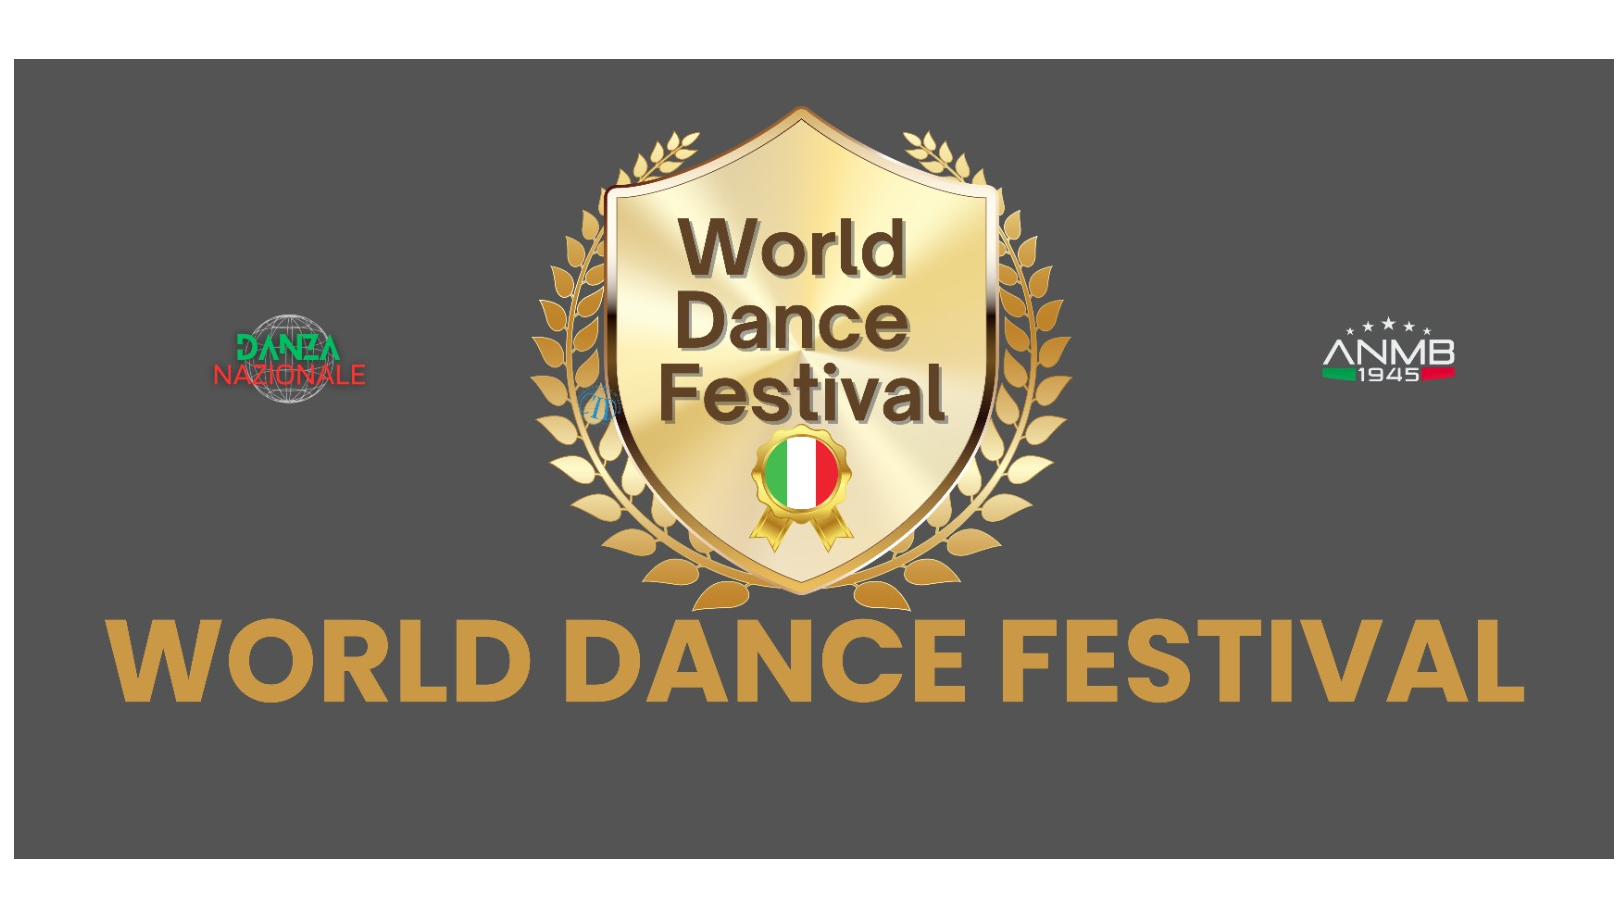 WORLD DANCE FESTIVAL picture